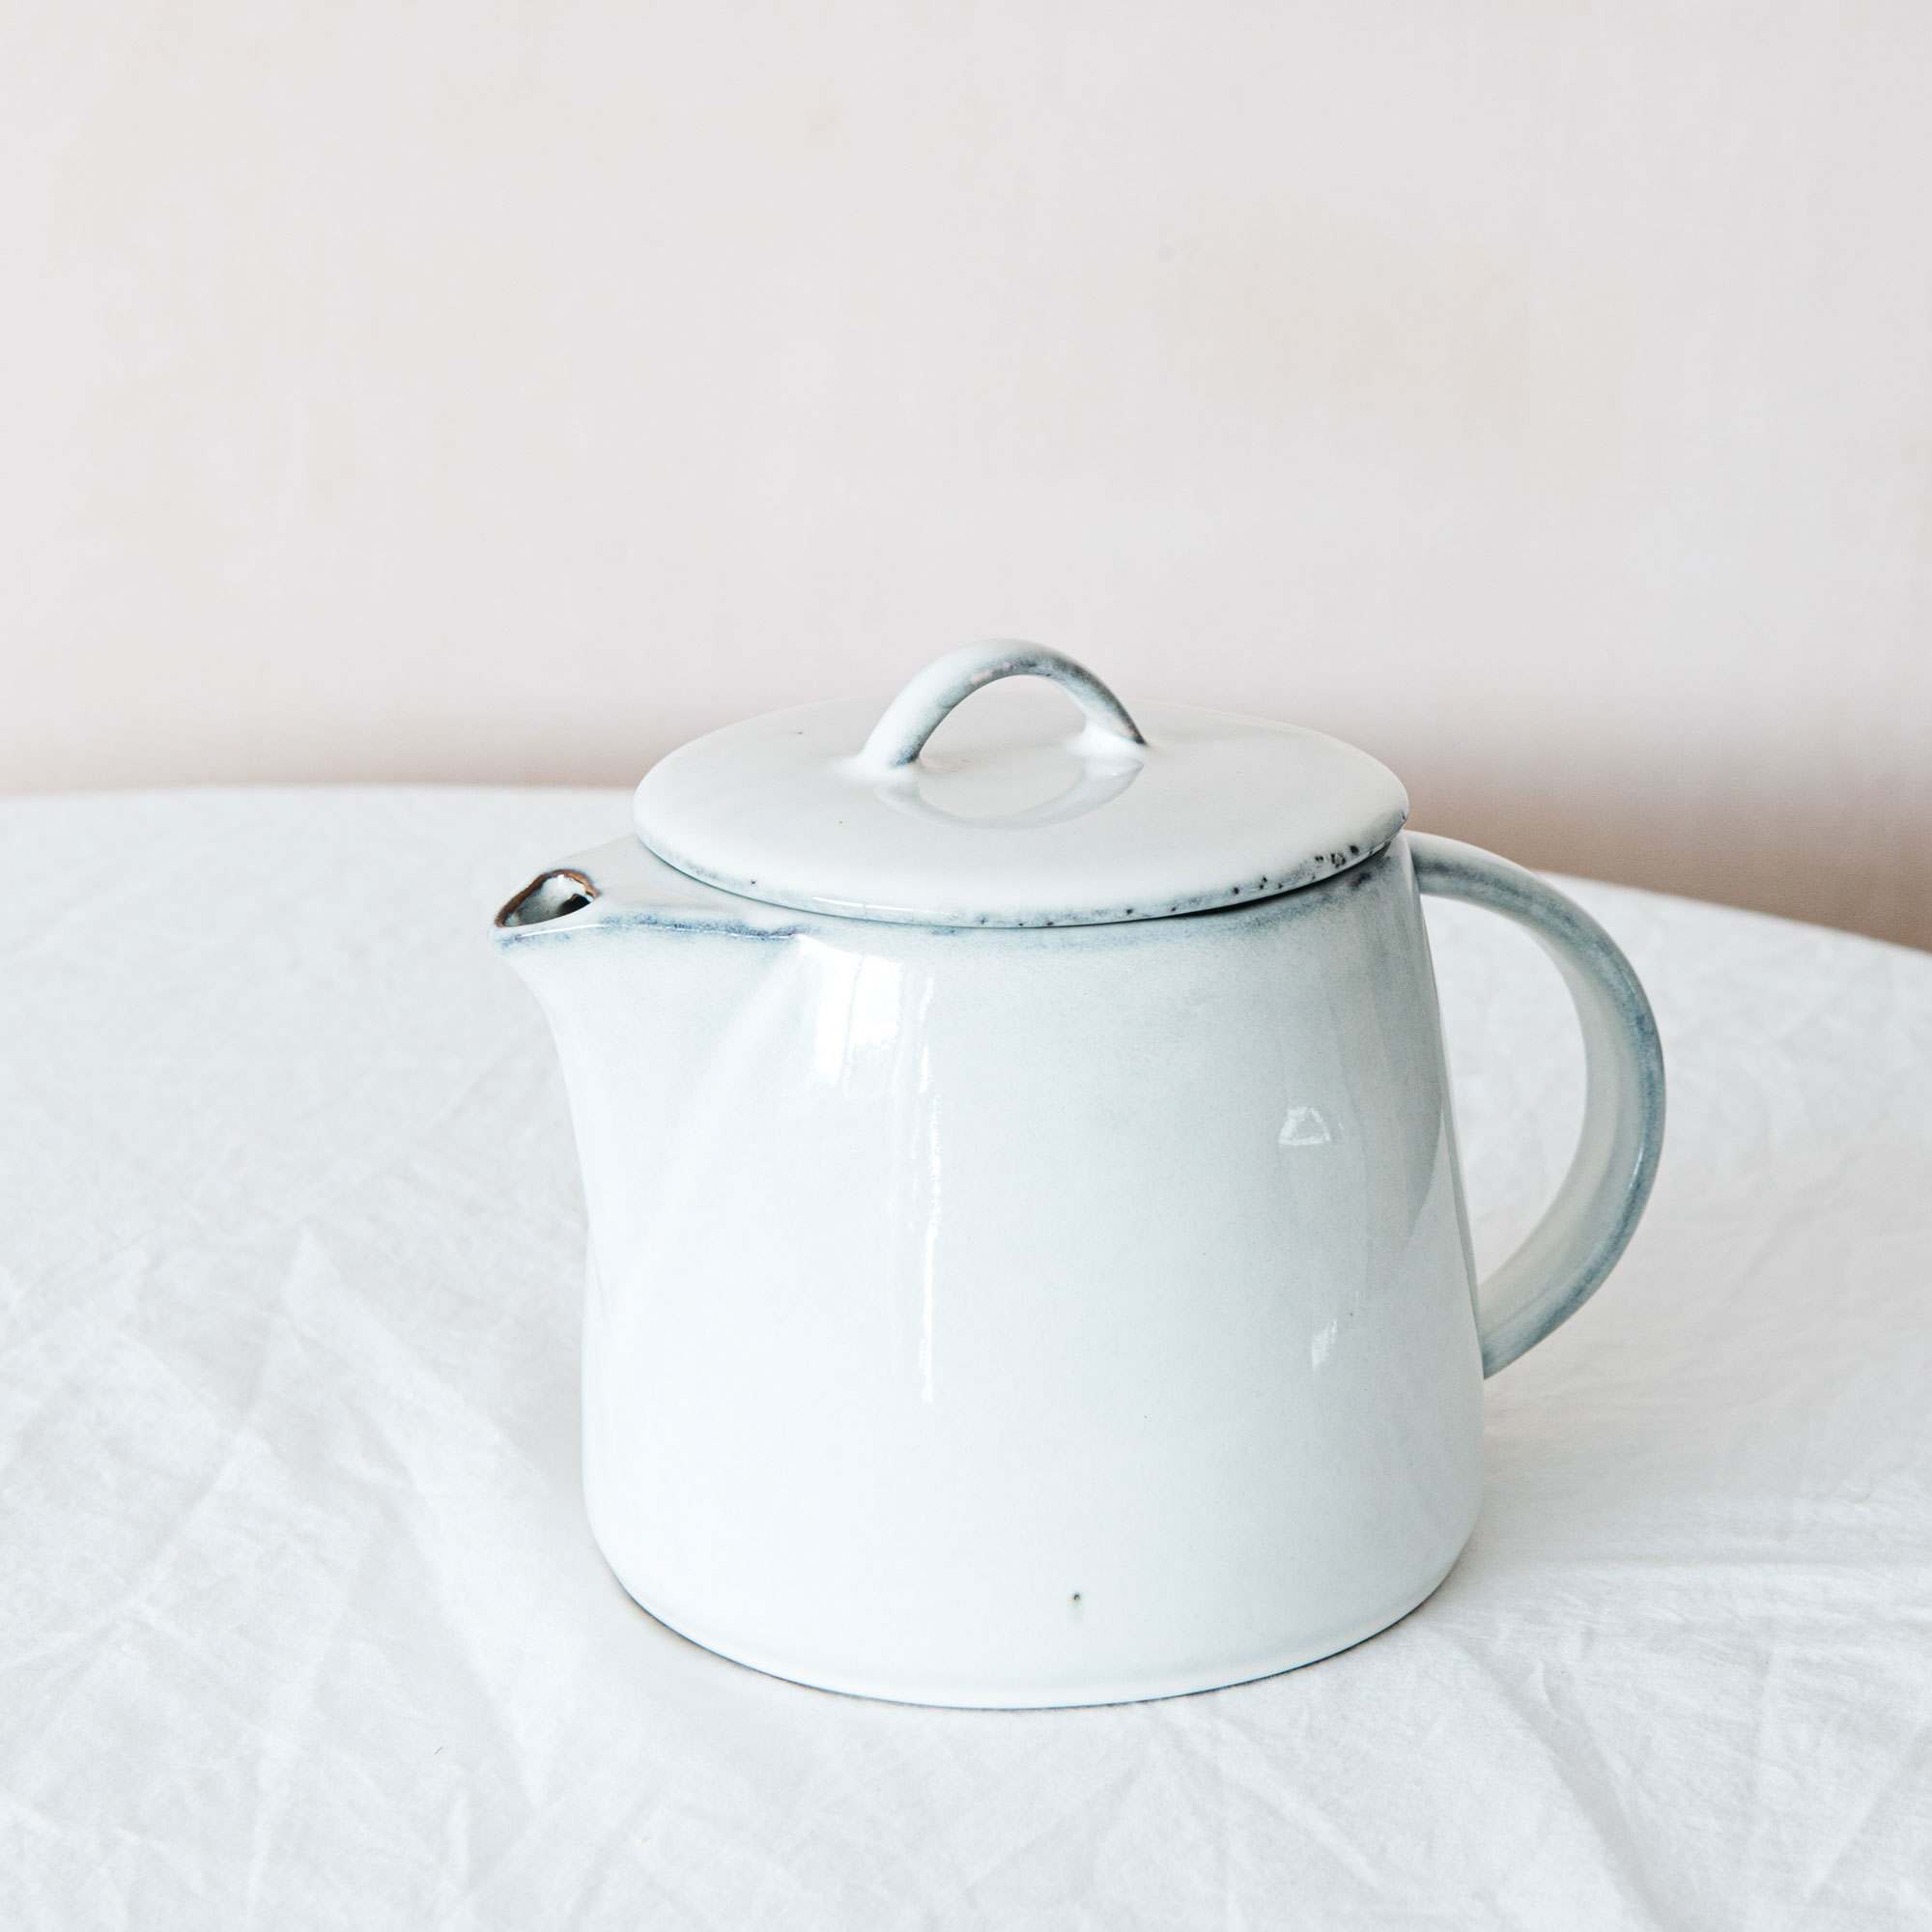 An image of Agna Tea Pot